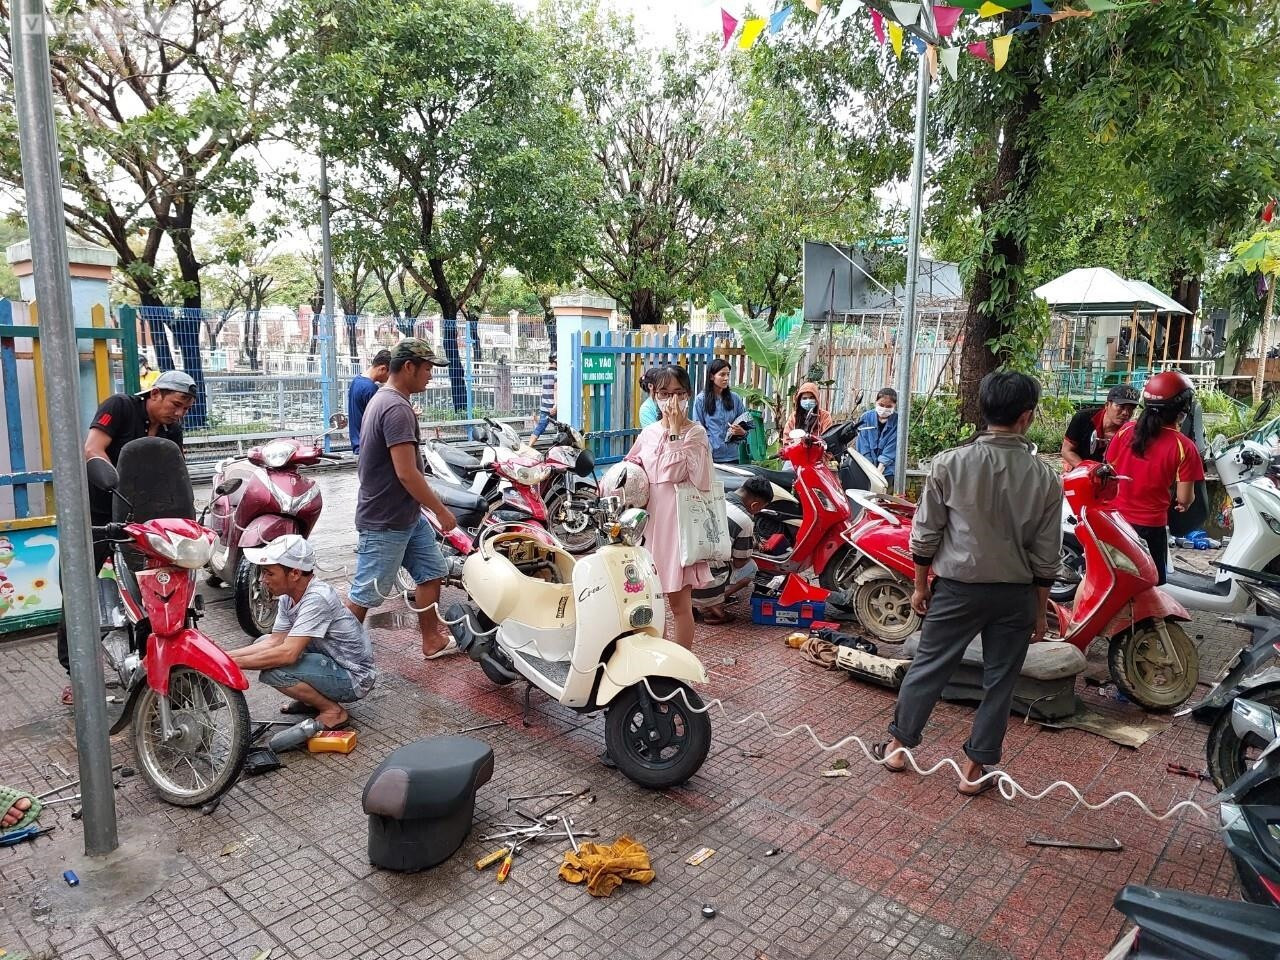 Ảnh: Nhóm bạn huyện miền núi Quảng Nam tới Đà Nẵng sửa xe miễn phí sau mưa lũ - 1